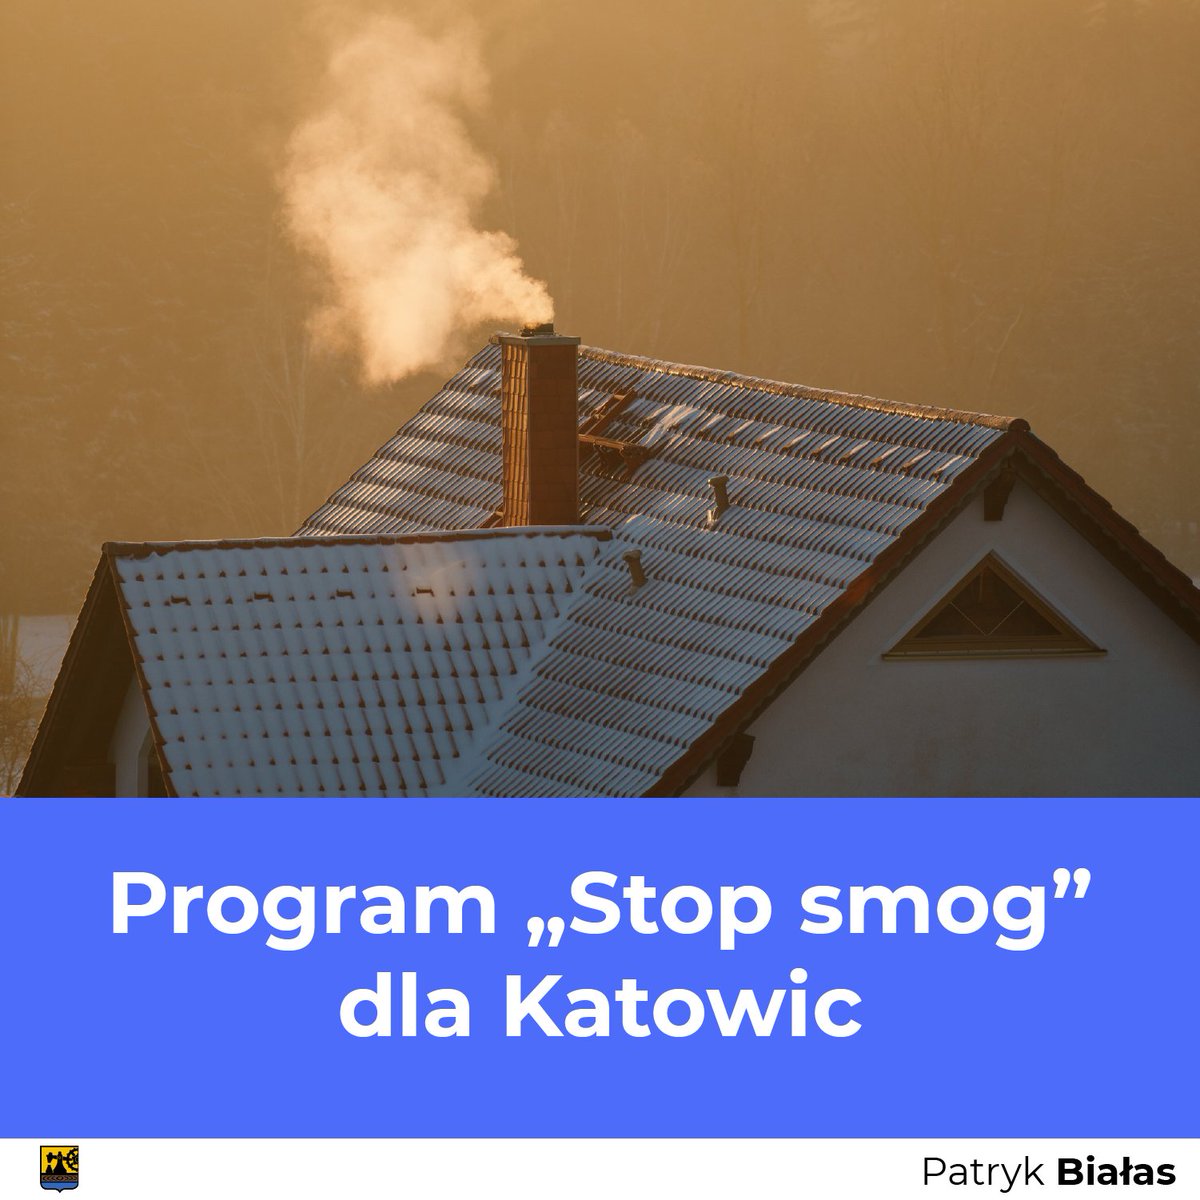 Wspólnie z @MakowskiJaro I @borkowski_lukas apelujemy do @KrupaMarcinpl o przyspieszenie przygotowania regulaminu dla wdrażania w #Katowice projektu #StopSmog @metropoliagzm bip.katowice.eu/RadaMiasta/dok… @bomiasto @CzystePowietrze @alarm_smogowy @SmogLab @AlarmNds @alarm_smogowyDS